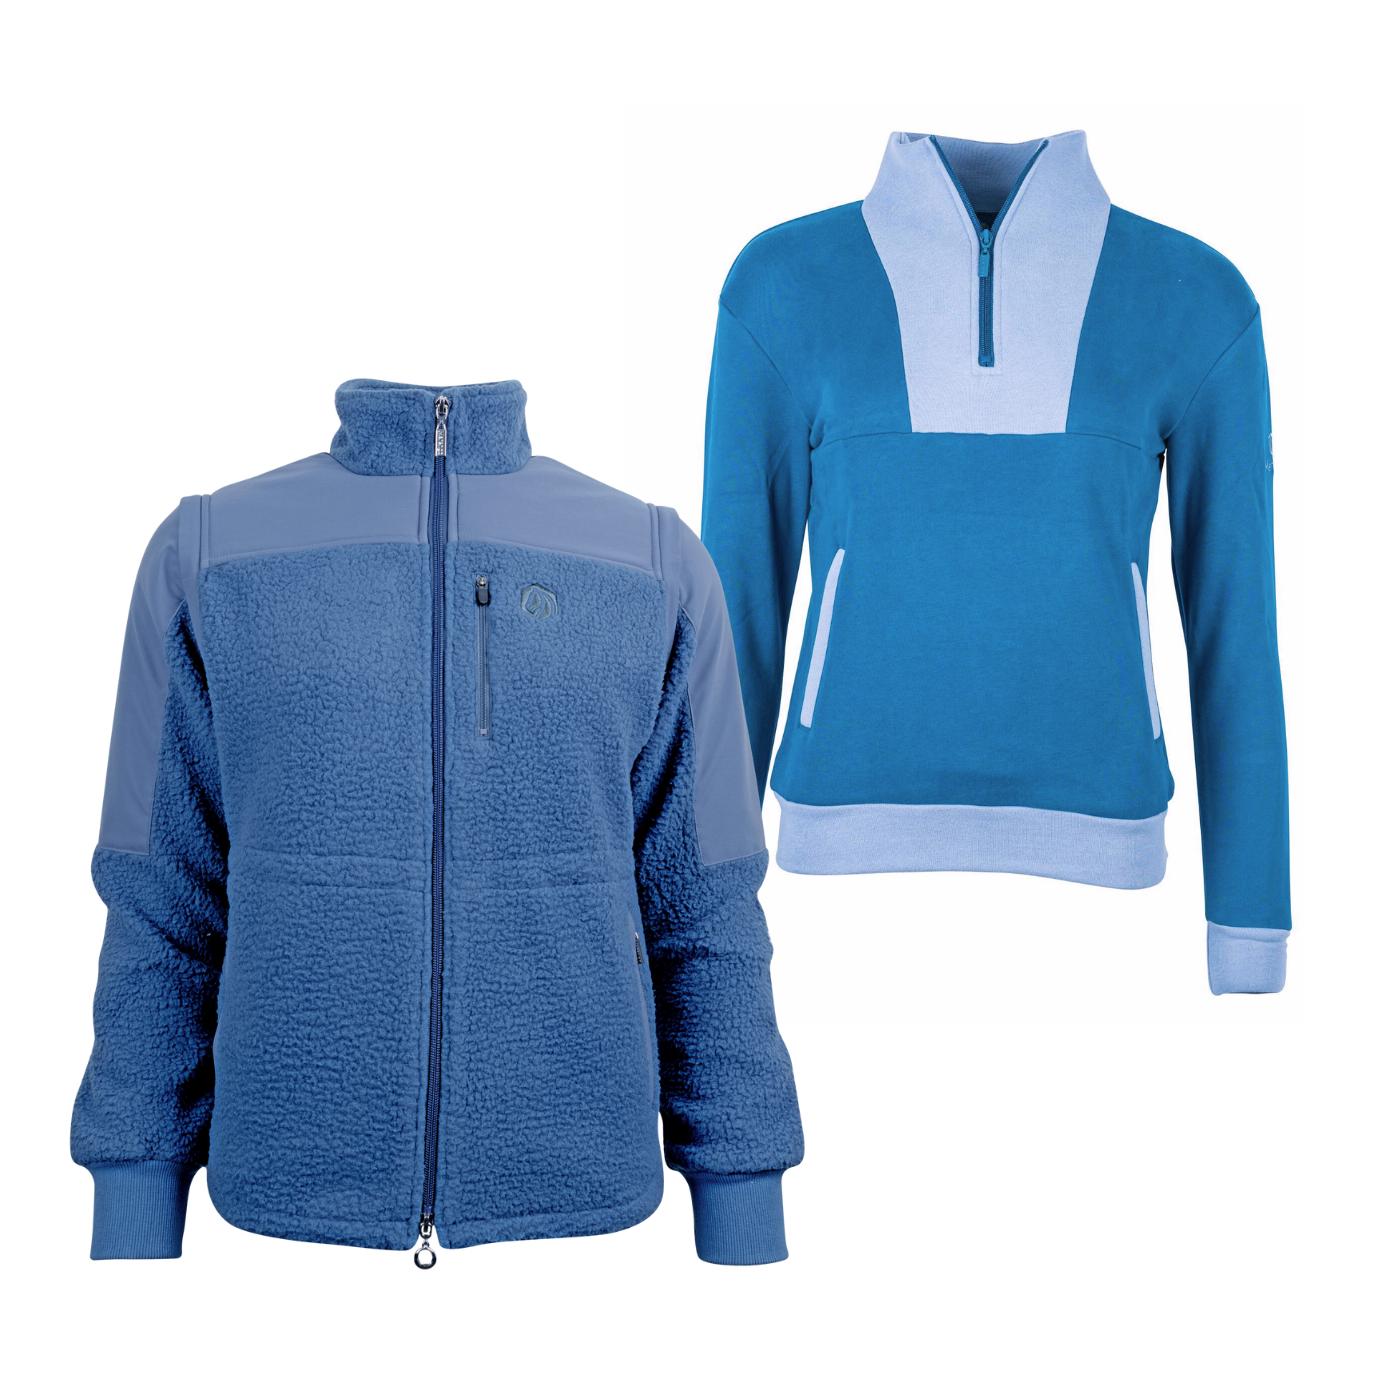 Marengo Outfit-Set Cosy Rides - Teddyfleece-Jacke & Zip Sweatshirt Farbe: Calm Blue / Ocean Blue, Grösse Pullover: XL, Grösse Jacke: M von Marengo